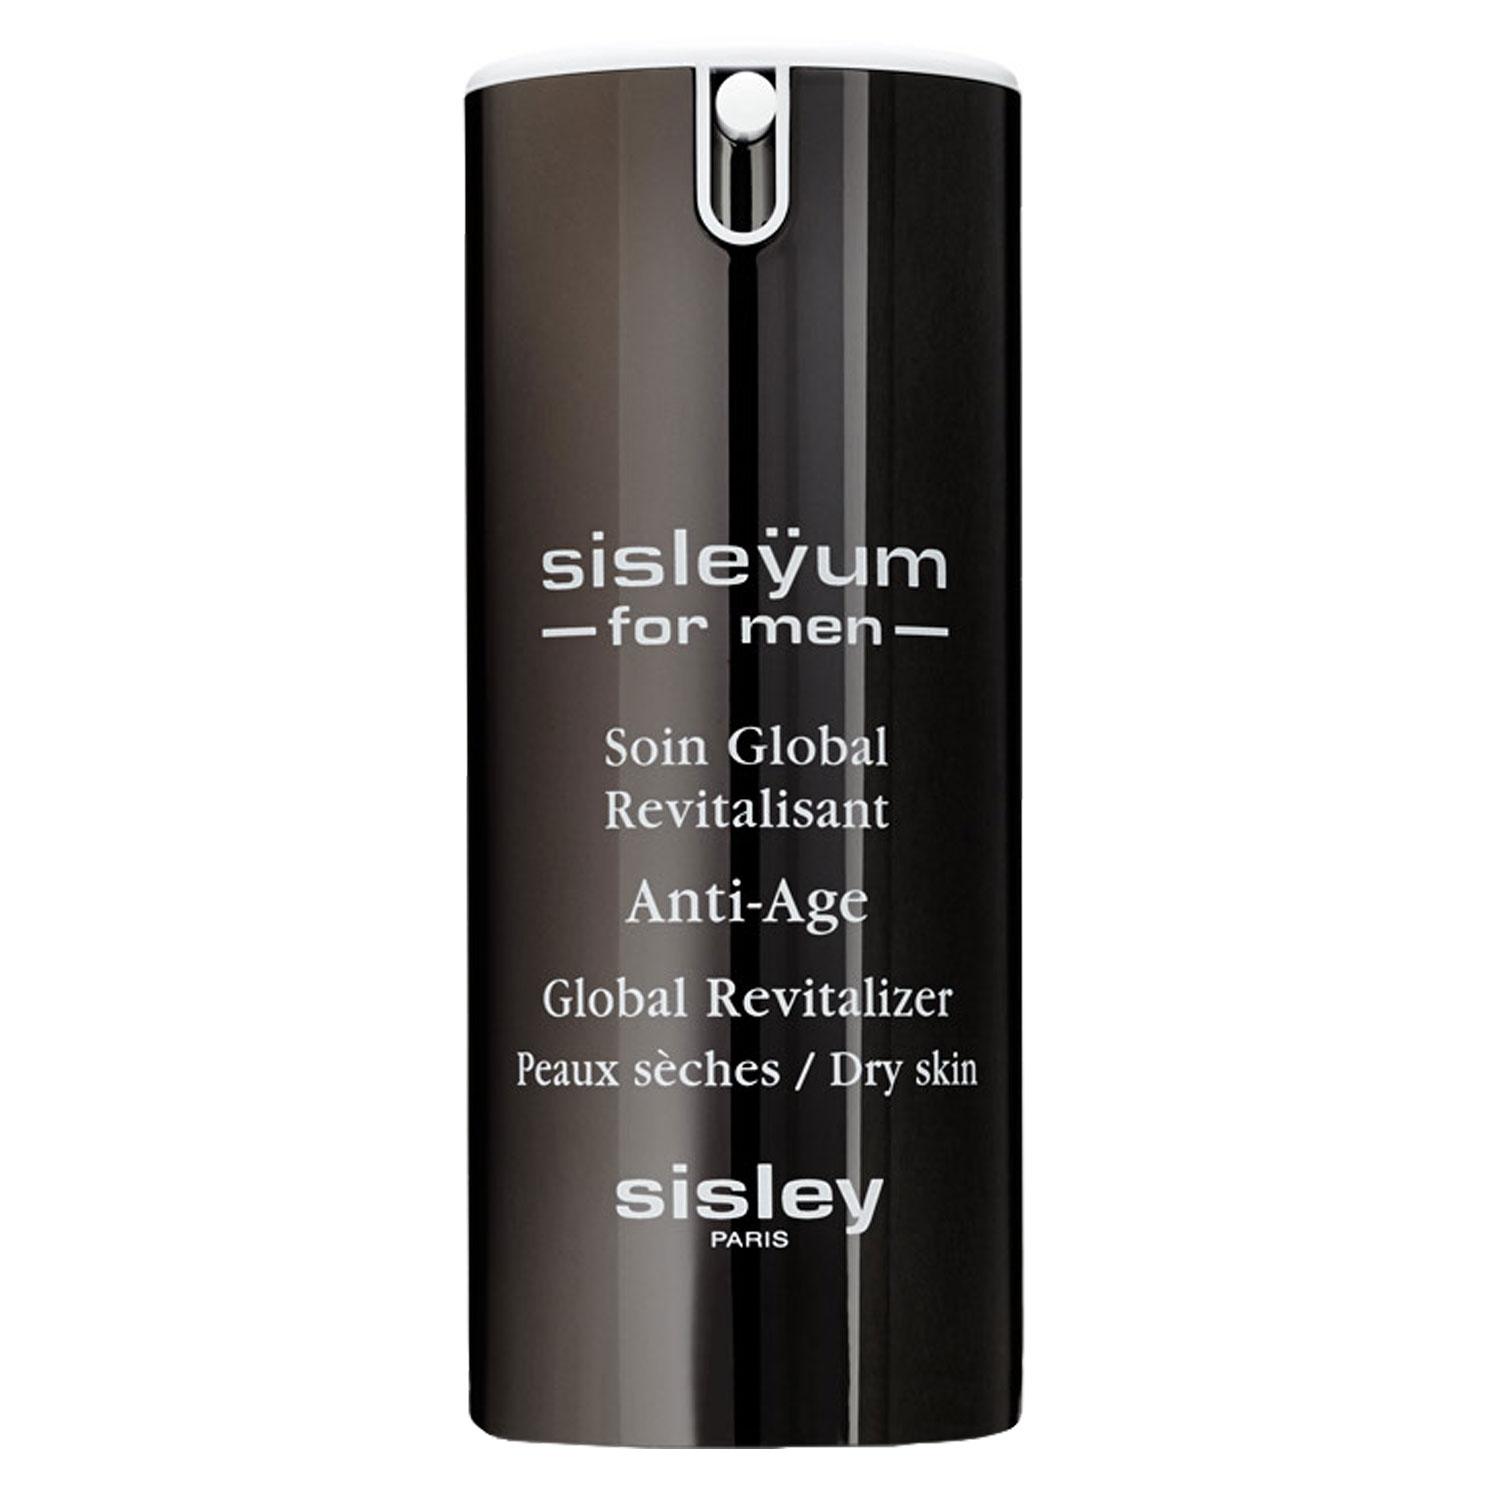 Sisleÿum - For Men Soin Global Revitalisant peaux sèches